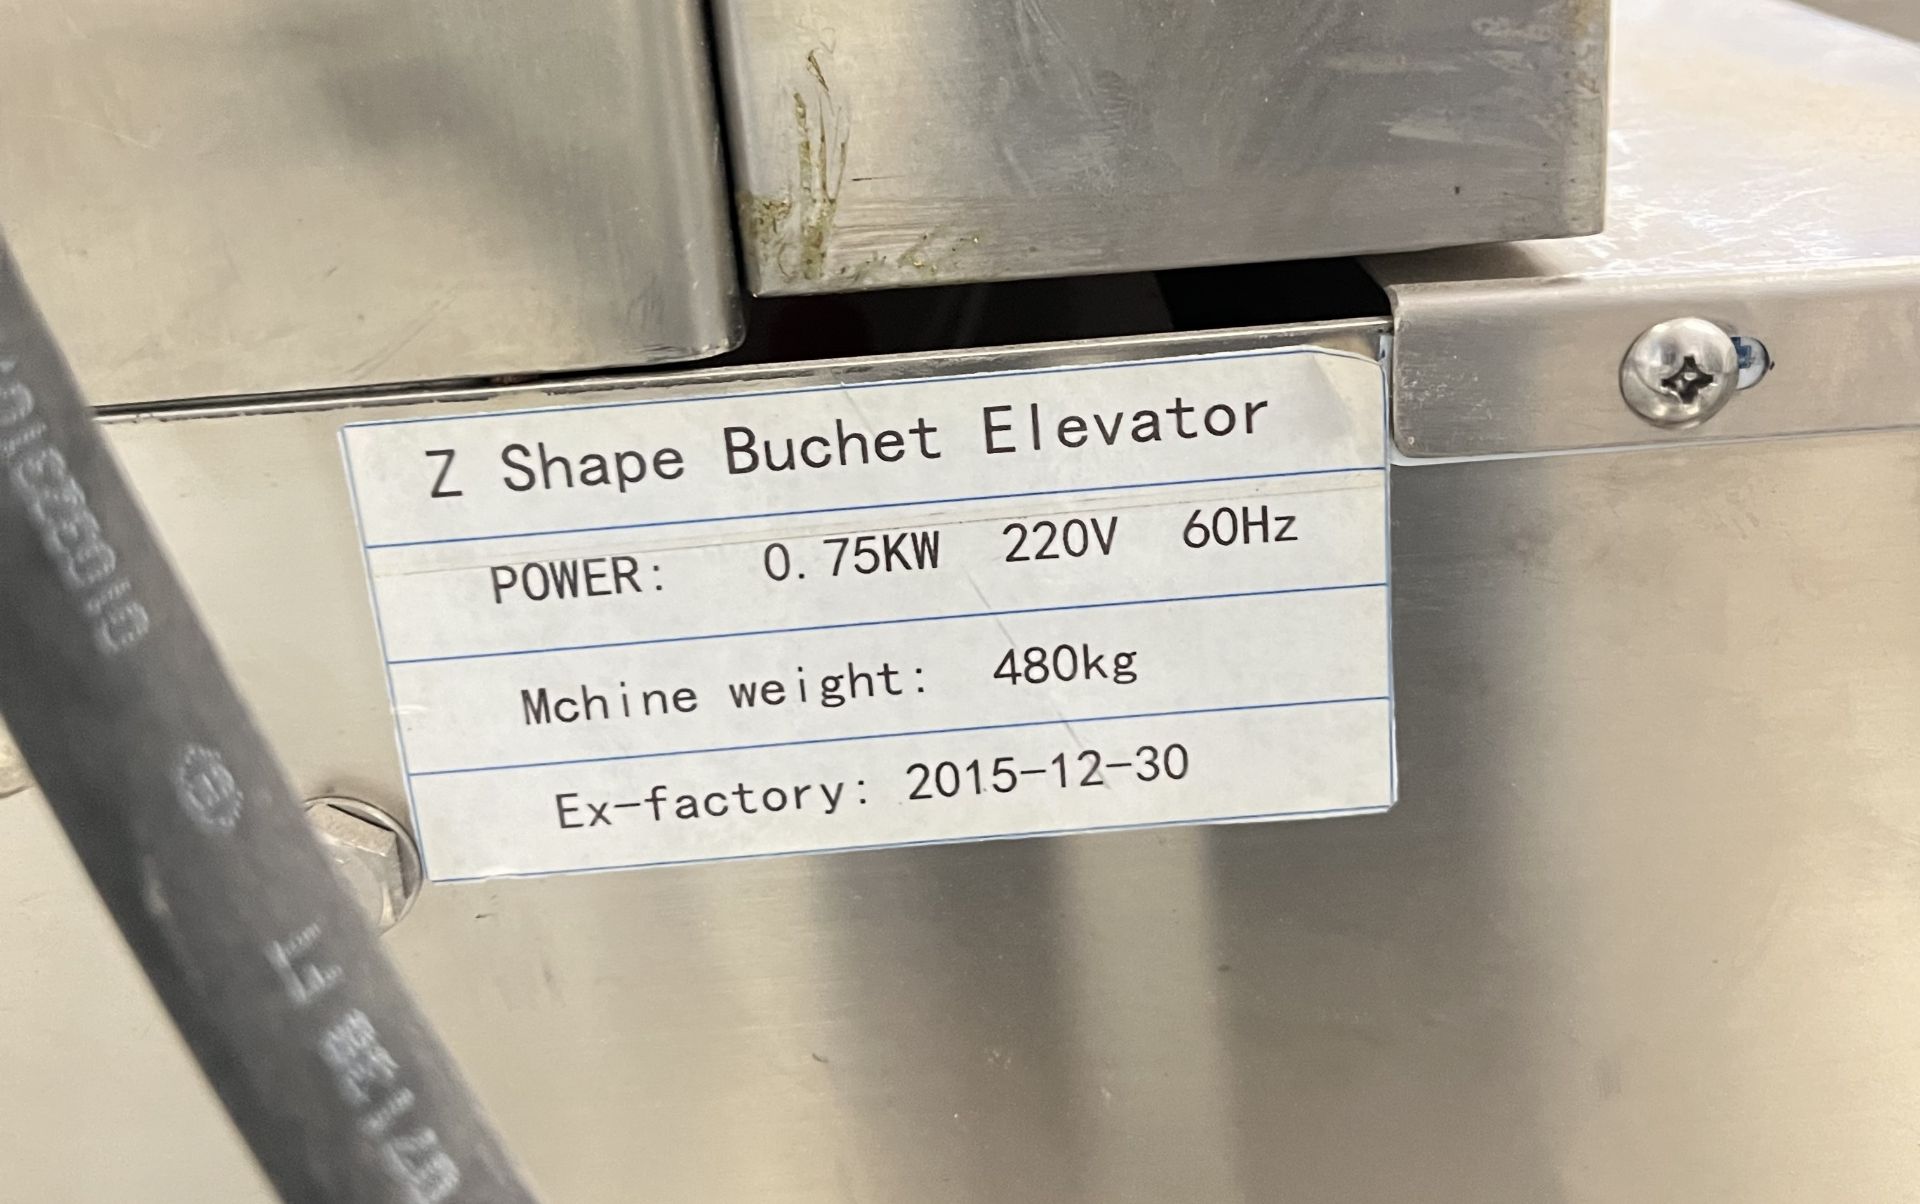 Bucket Elevator - Image 2 of 2